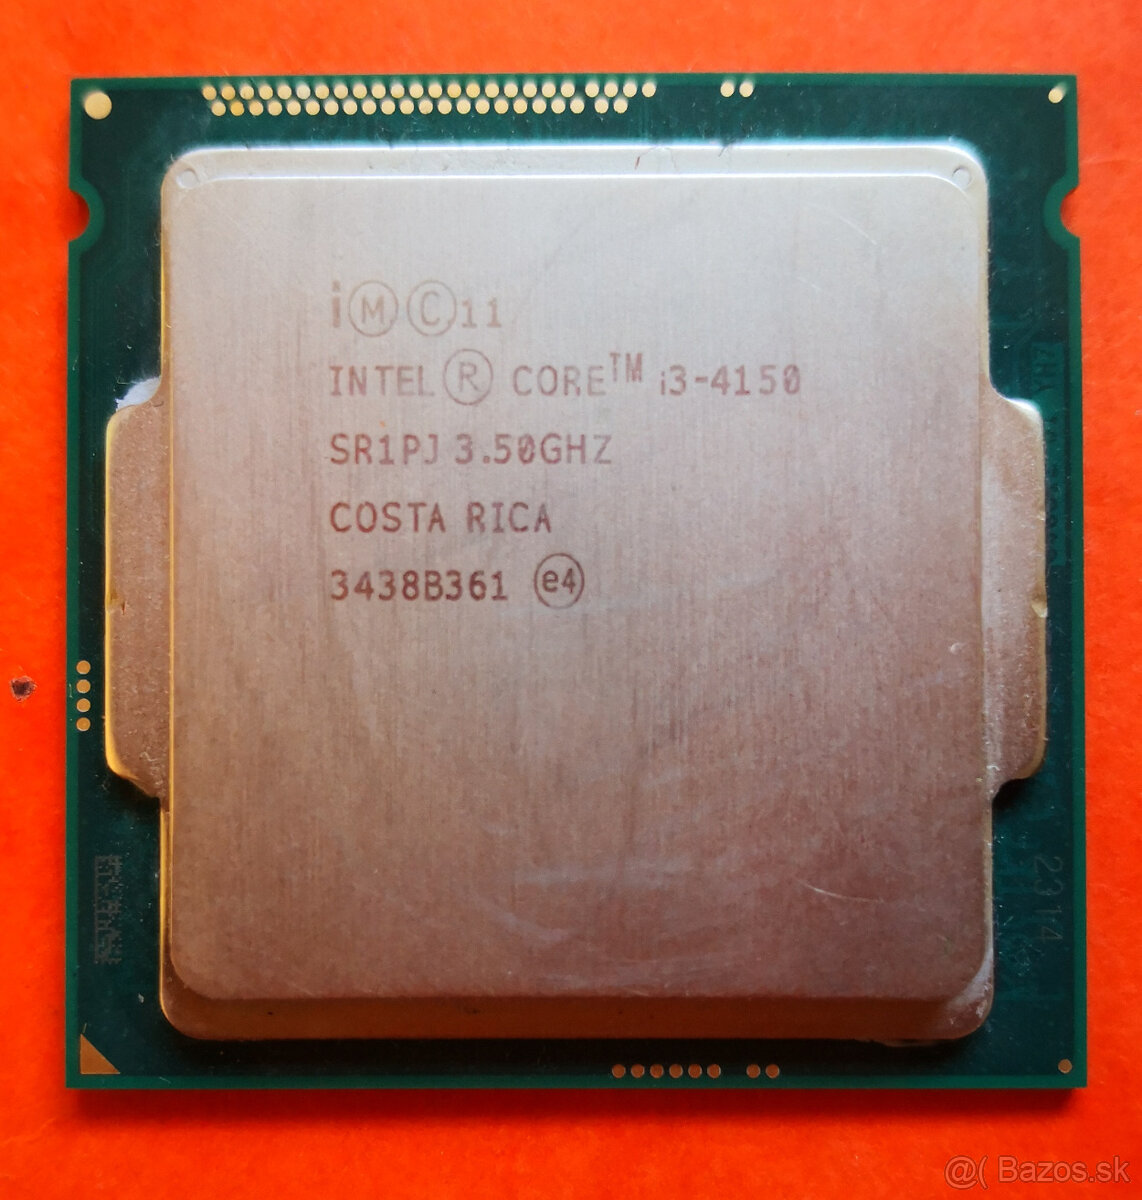 Predám CPU pre PC - Intel Core i3-4150@3.50GHz, FCLGA1150